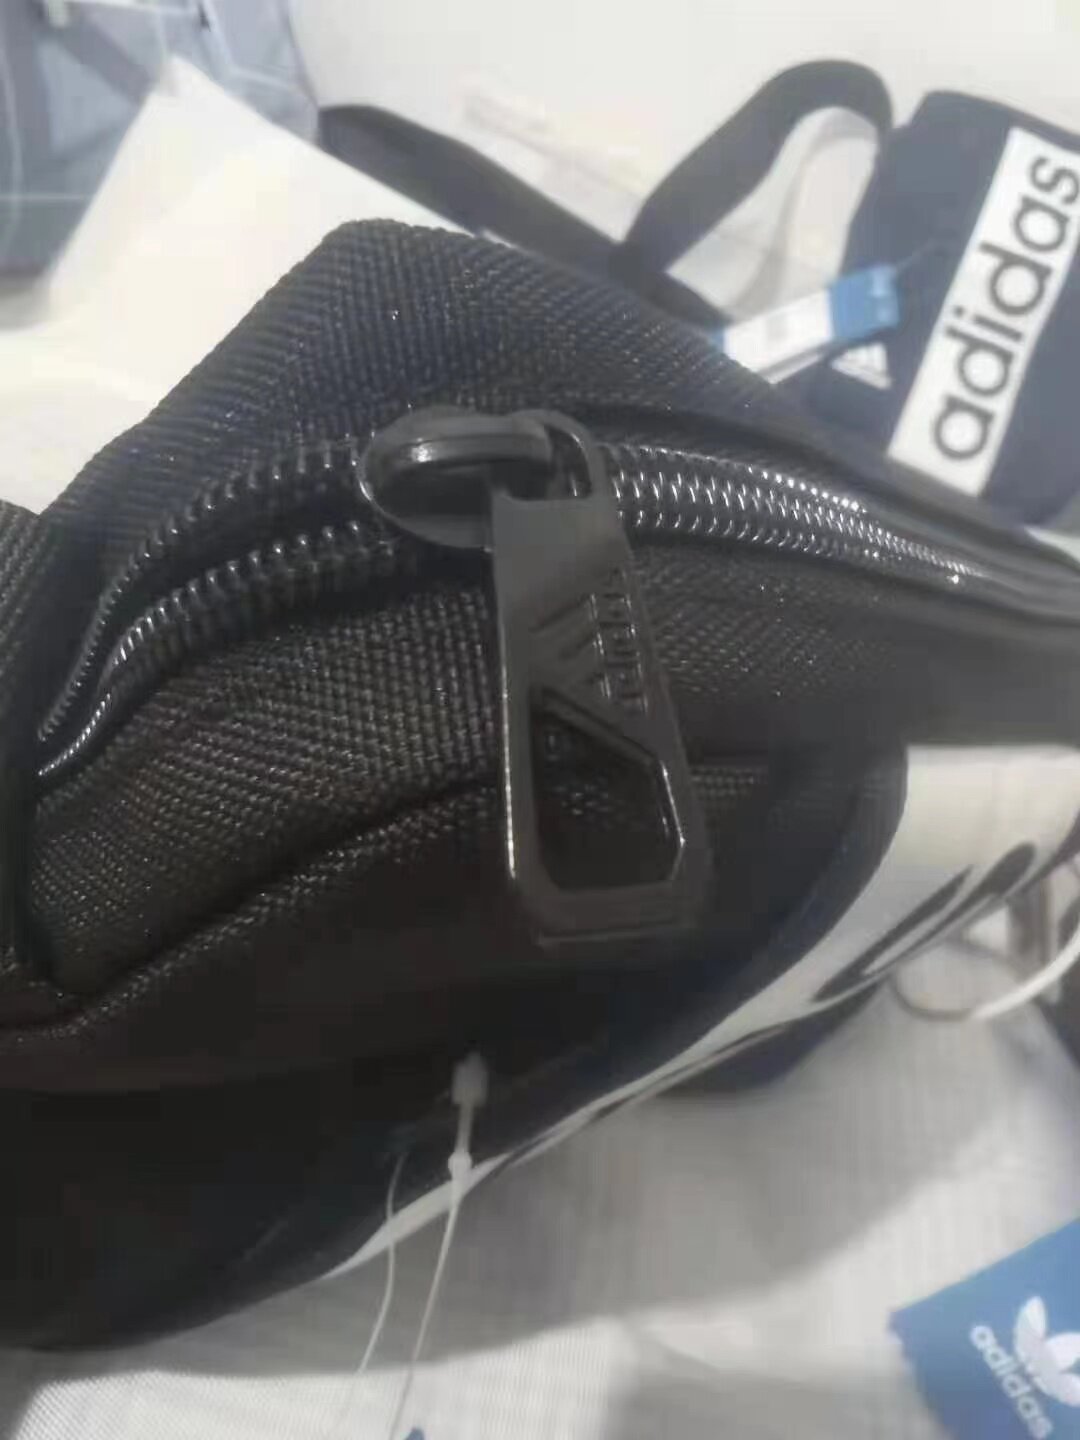 มุมมองเพิ่มเติมเกี่ยวกับ Adidass Crossbody Bag กระเป๋าสะพาย Fashion handbag